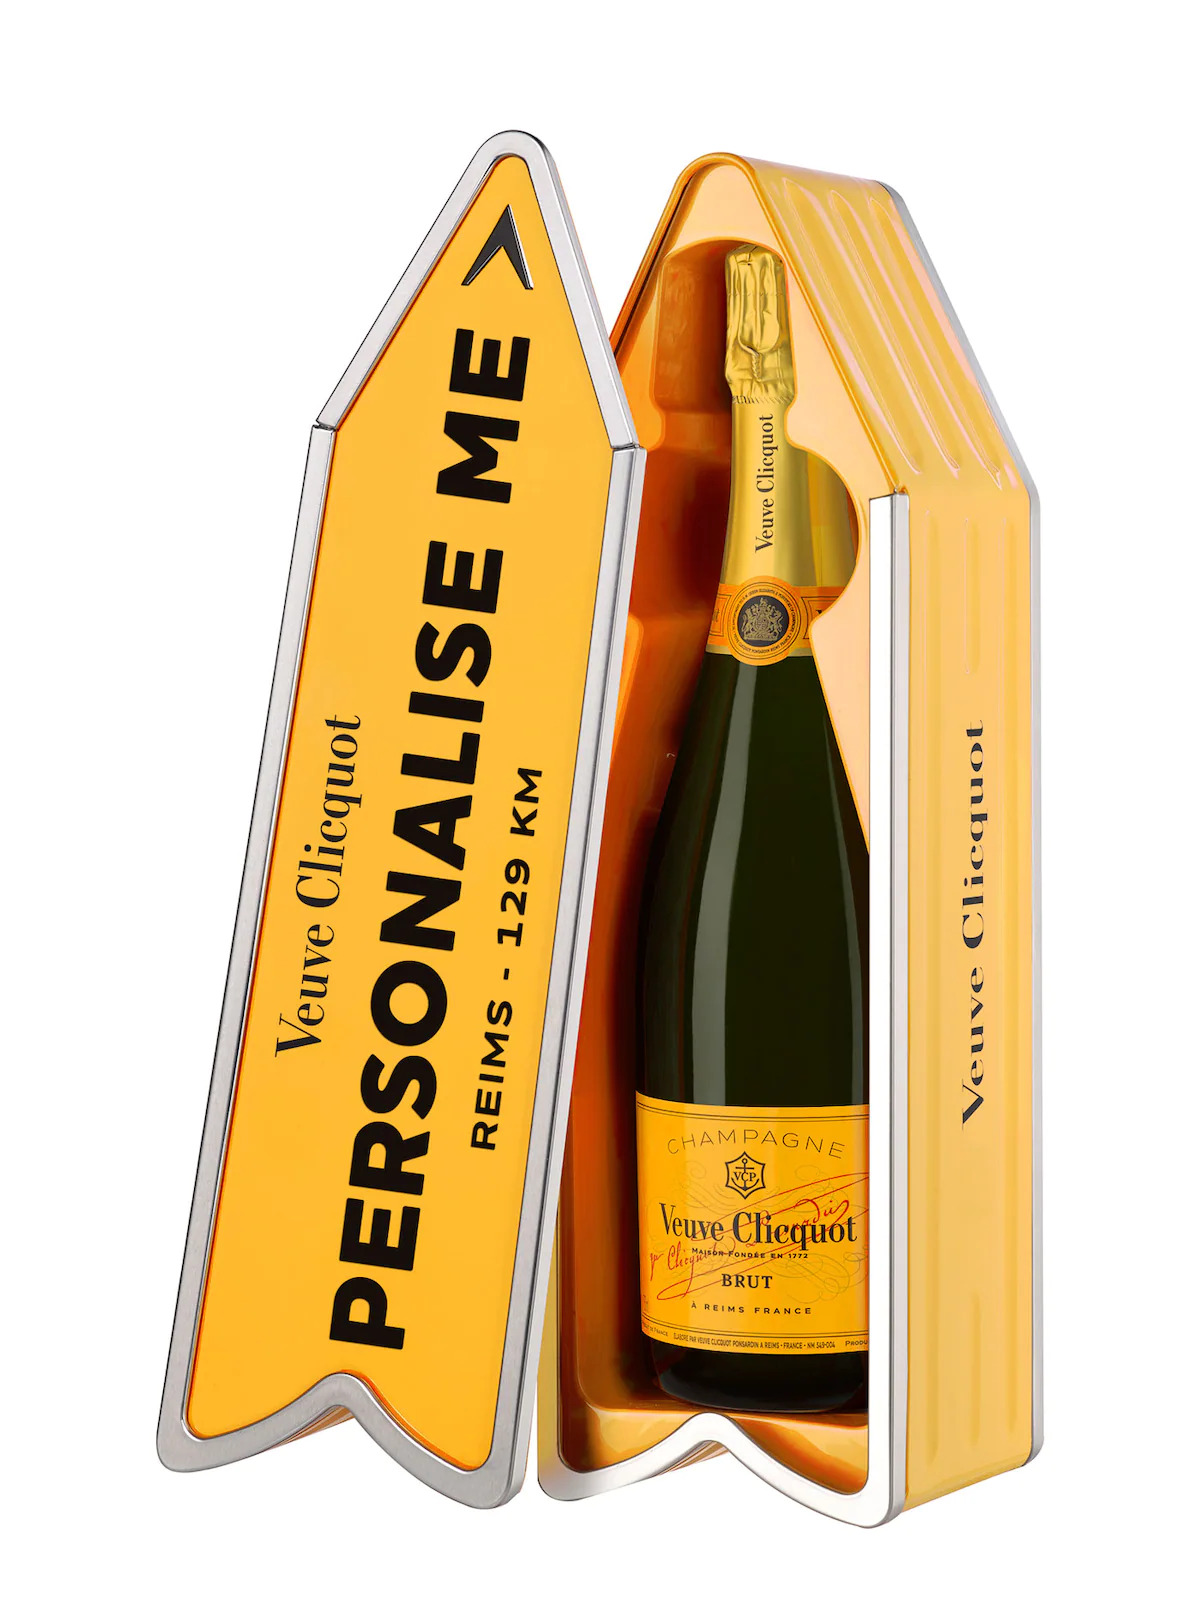 Champagne Veuve Clicquot Arrow met gepersonaliseerde naam